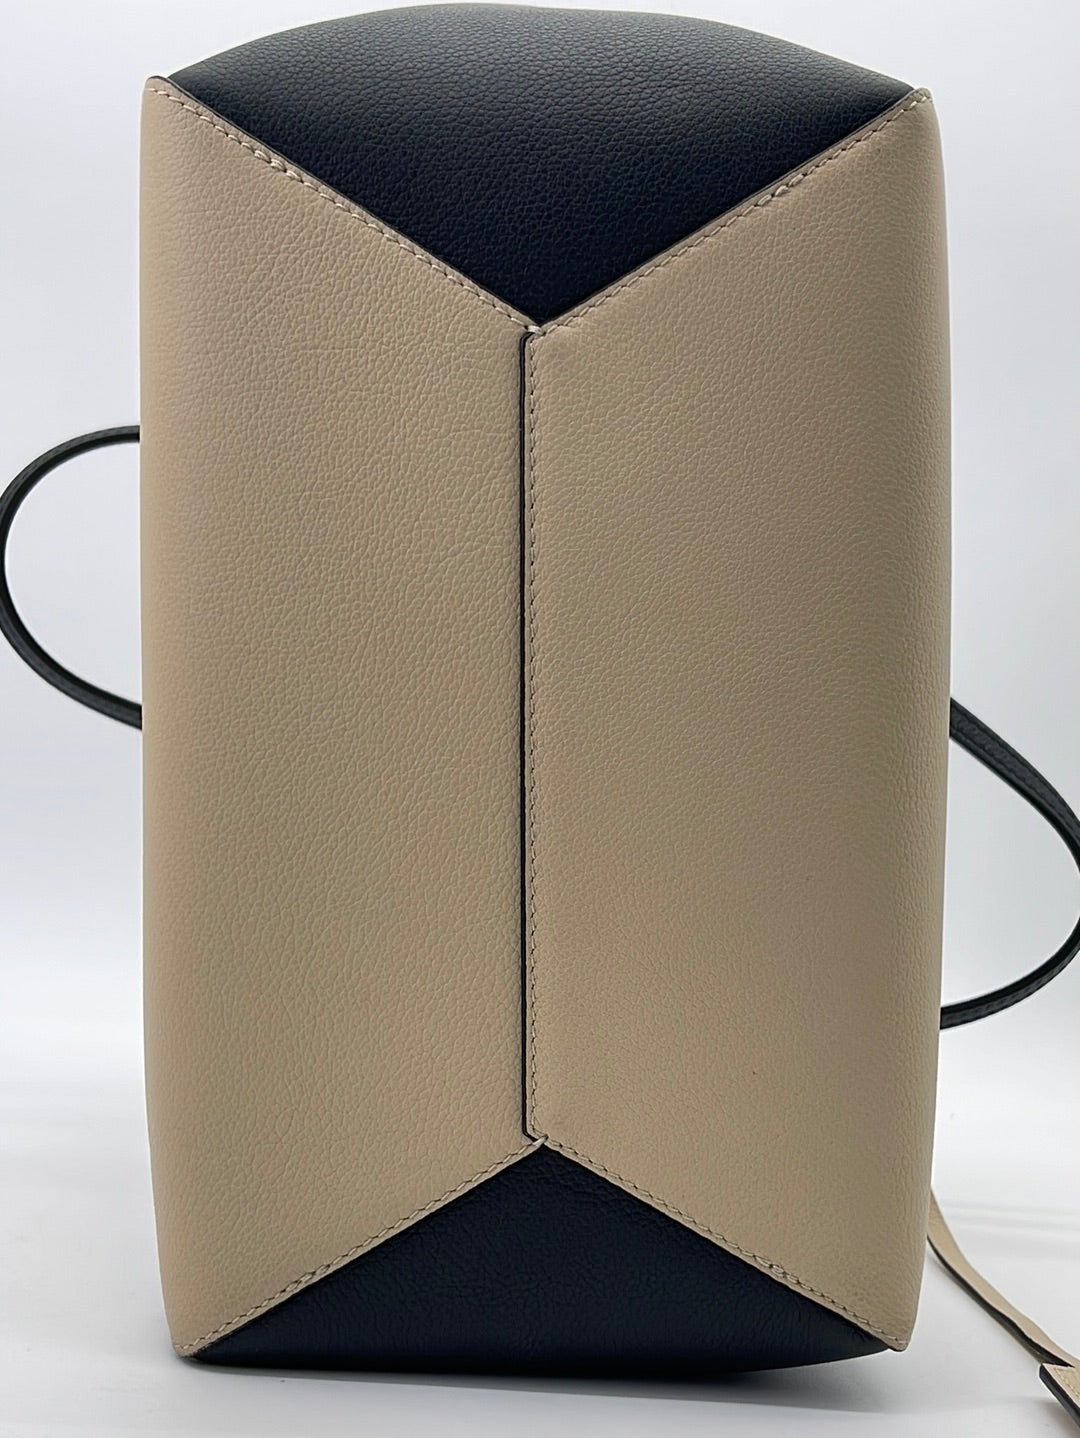 M42289 Louis Vuitton 2016 Premium Leather Lockme Cabas Handbag